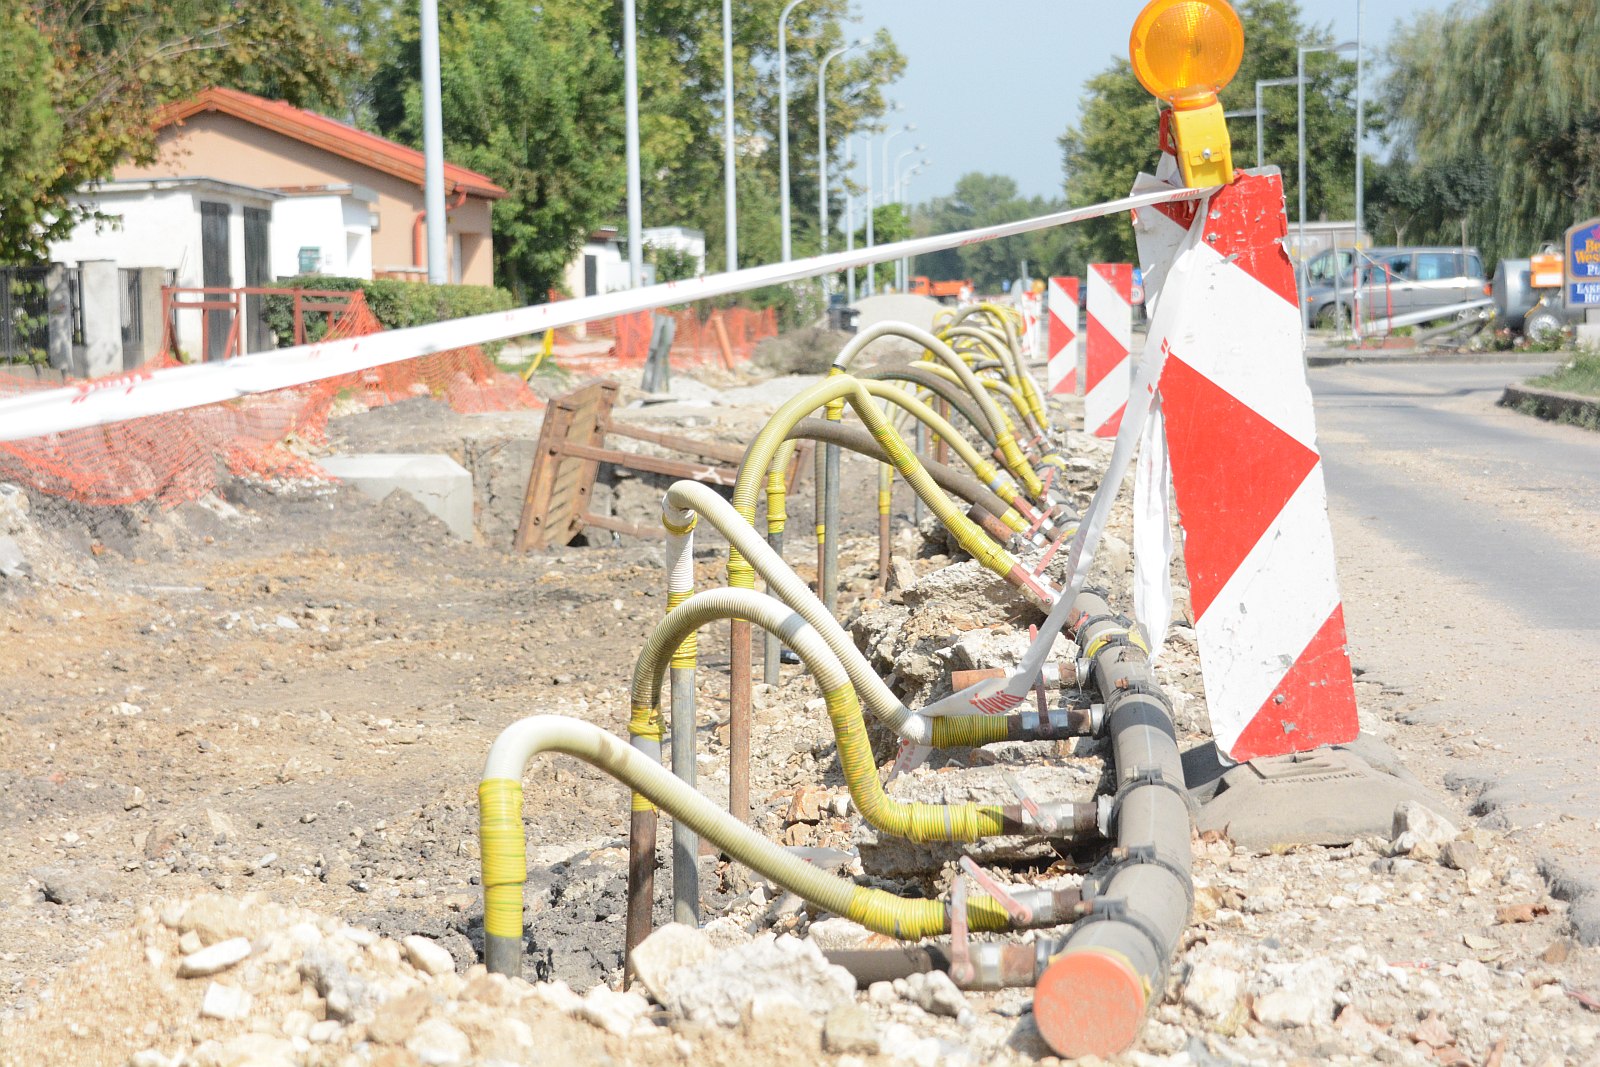 Ütemterv szerint zajlik a felújítás a Ligetsoron - kicserélték a város egyik legnagyobb vízvezetékét is